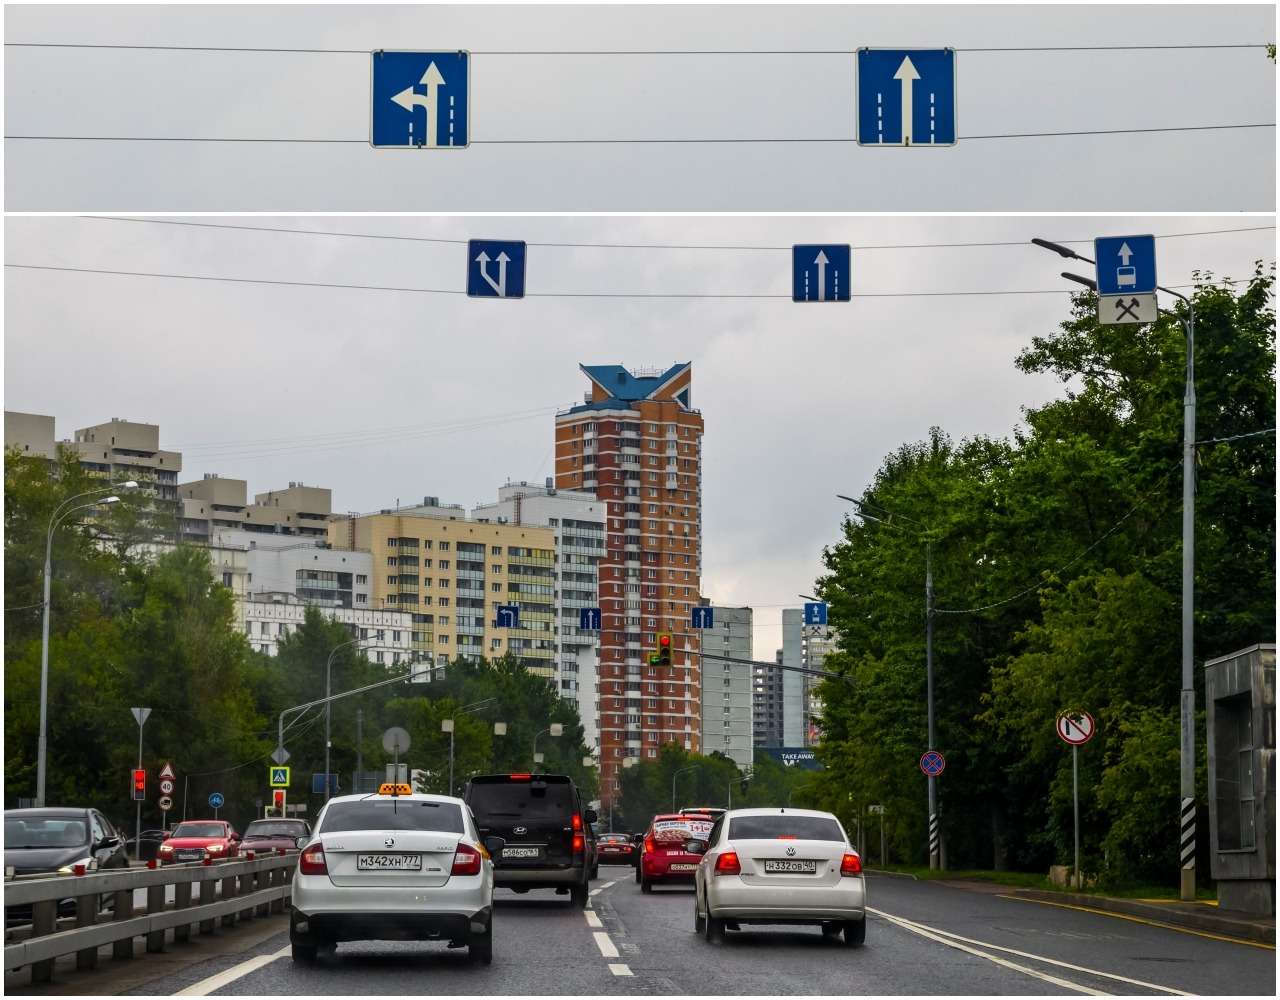 15 ловушек для водителей ЗР нашел на улицах Москвы. Найдите больше! — фото 900085